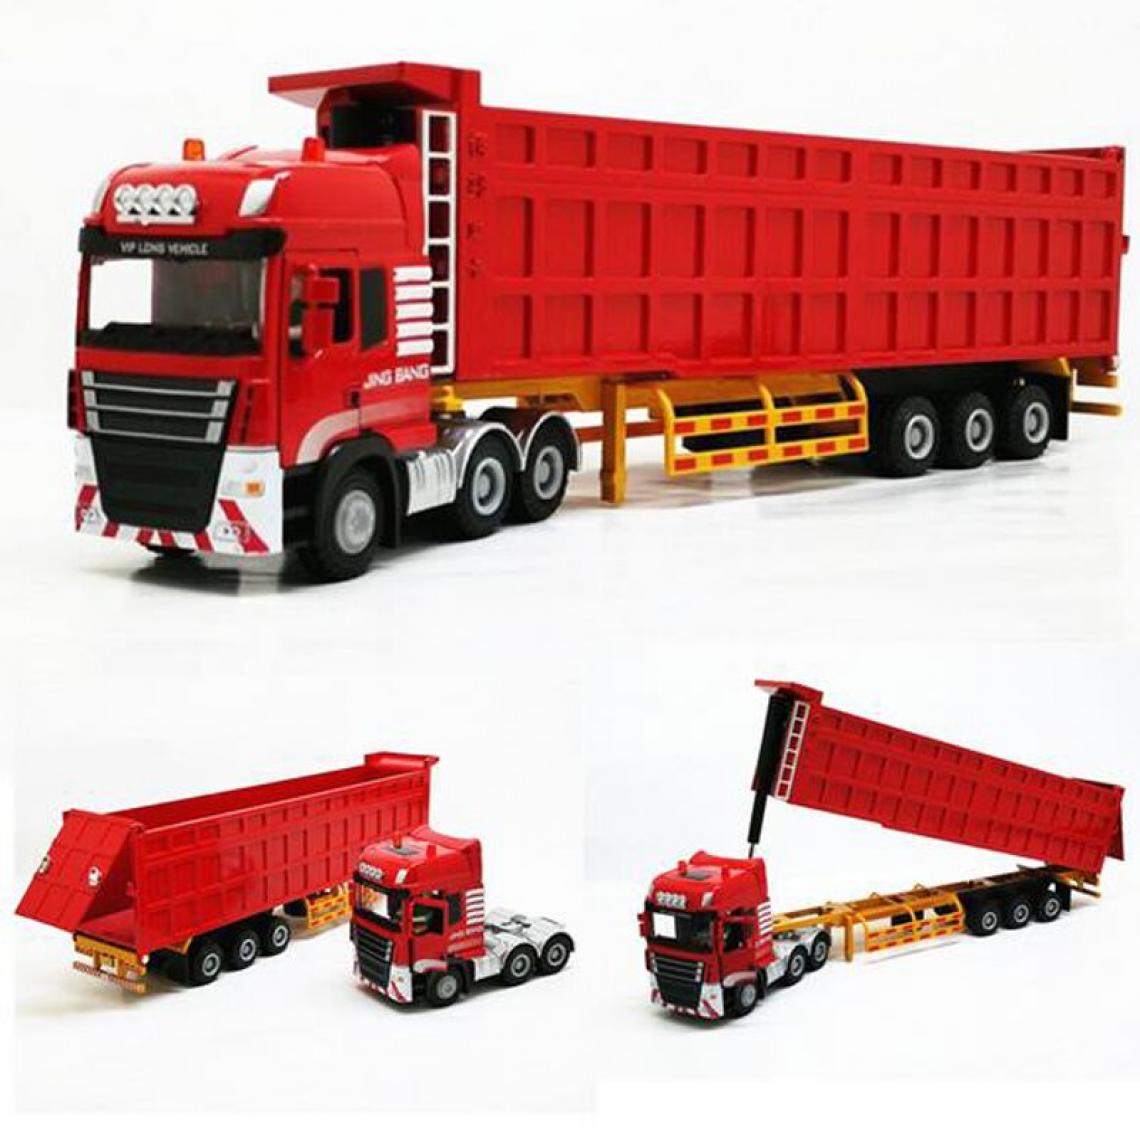 Universal - Simulation semi-remorque poids lourd camion benne camion alliage transport modèle jouet camion modèle collection cadeau |(Rouge) - Voitures